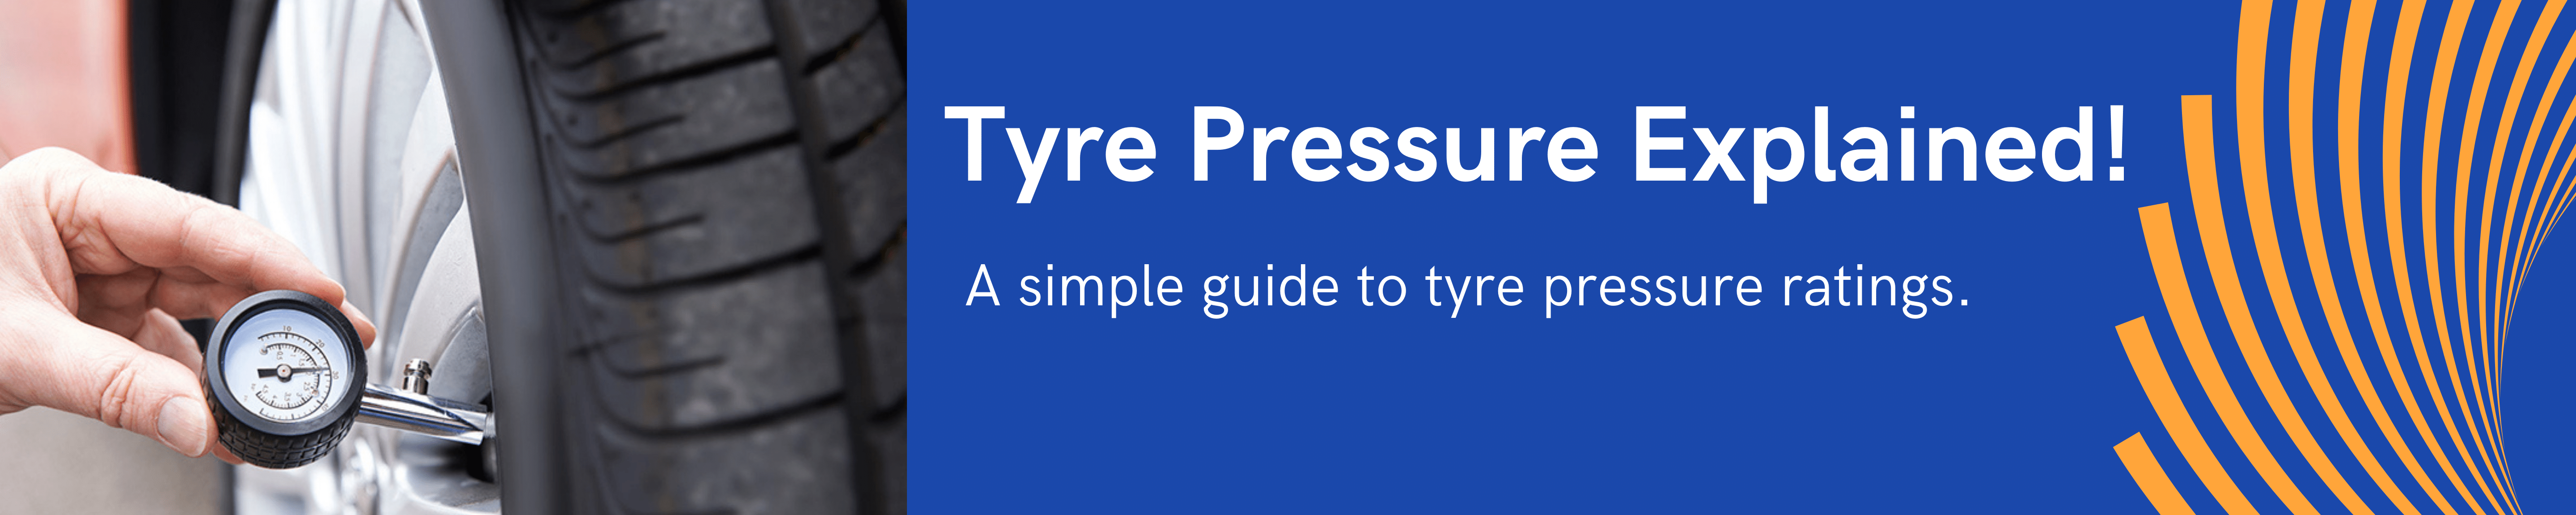 tyre pressure